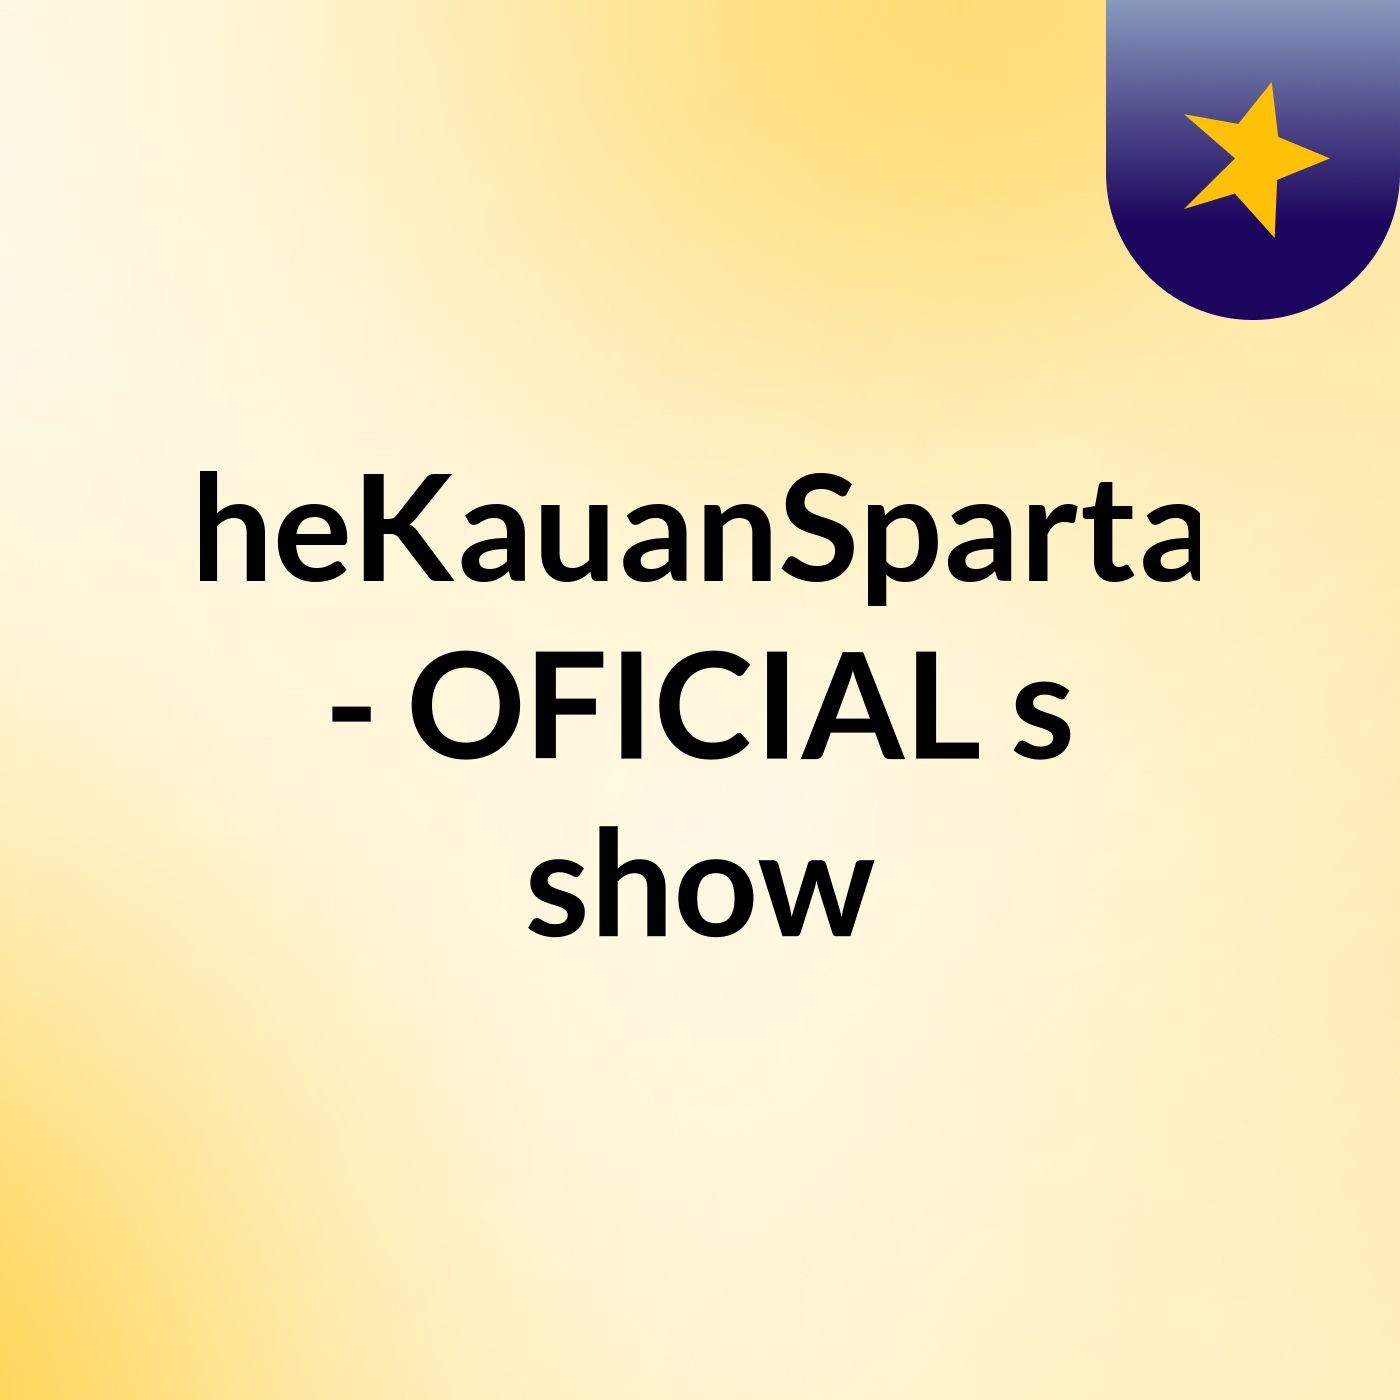 TheKauanSpartan - OFICIAL's show